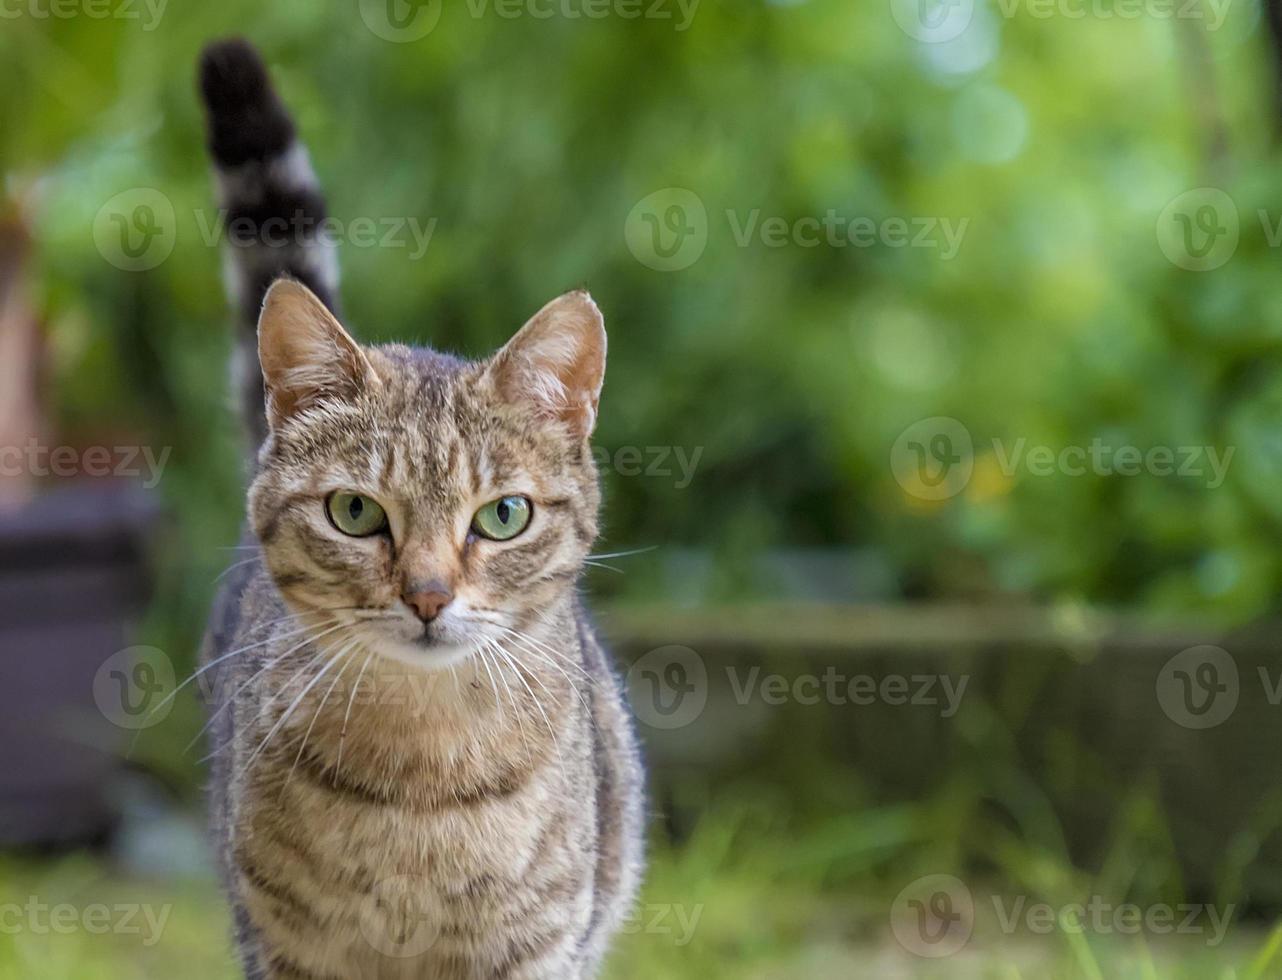 retrato de gato selvagem de beleza com olhos verdes no jardim foto